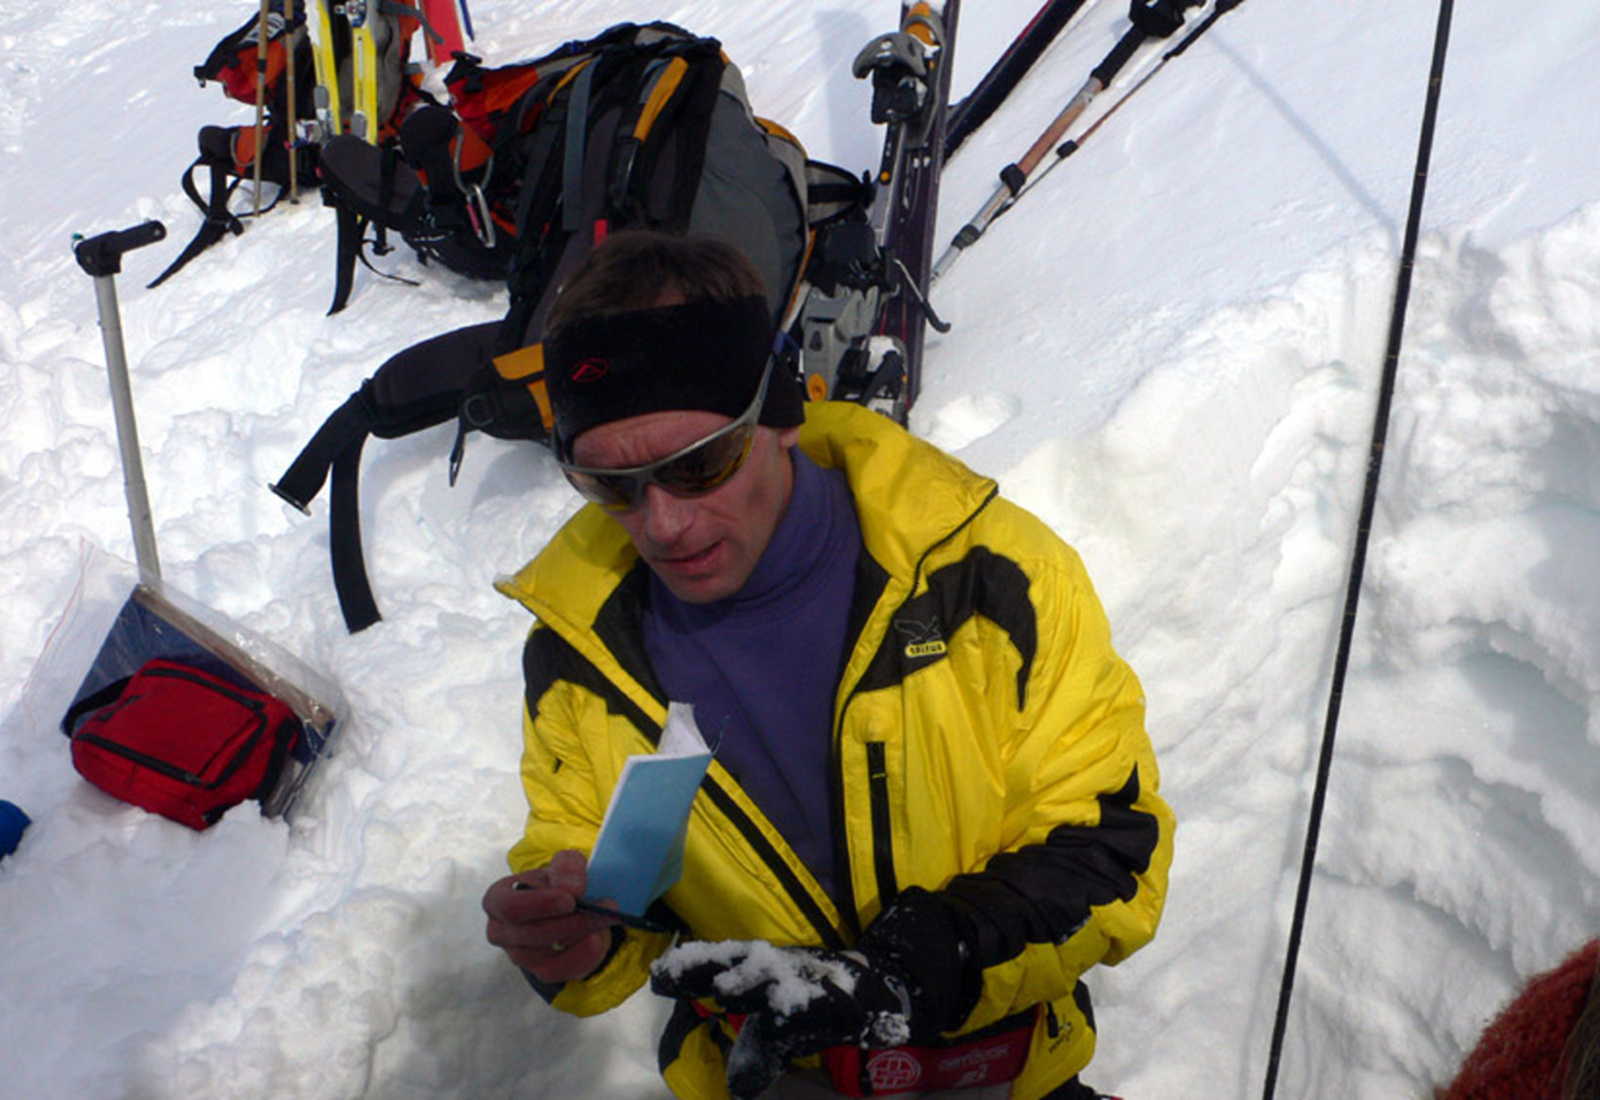 Patrick Nairz při ukázce sněhového profilu